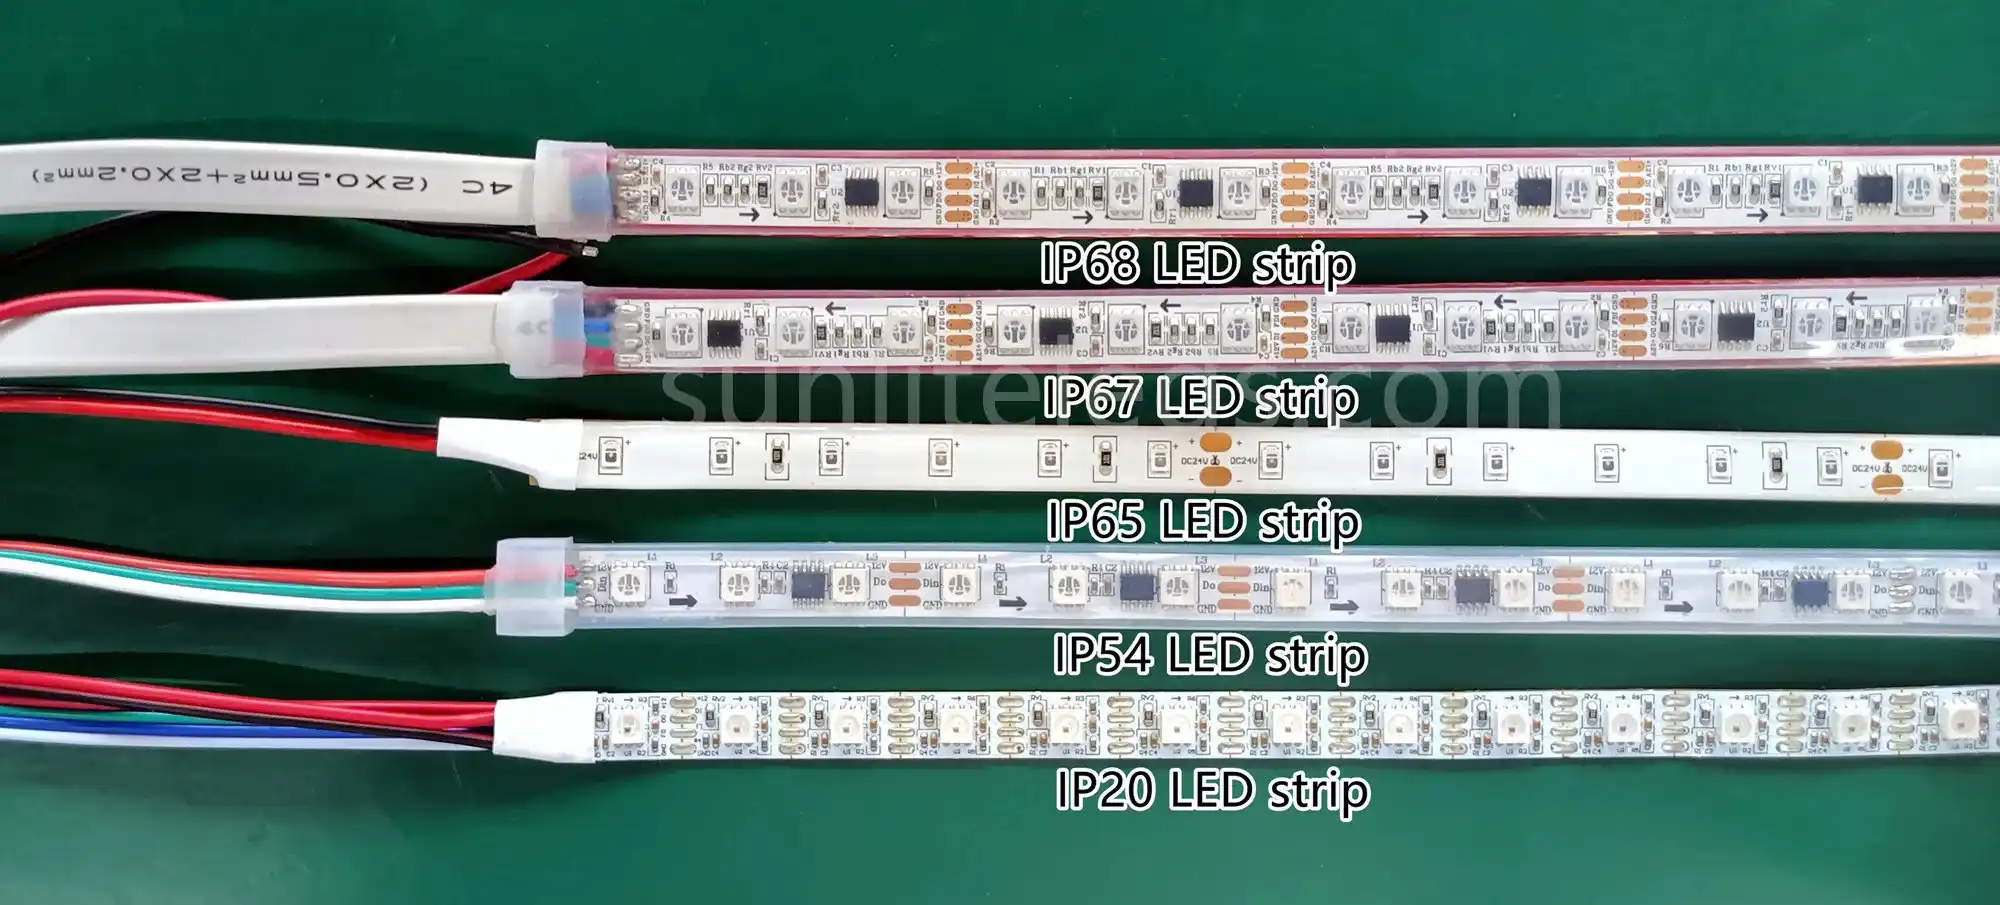 LED strip IP20 vs IP54 vs IP65 vs IP67 vs IP68